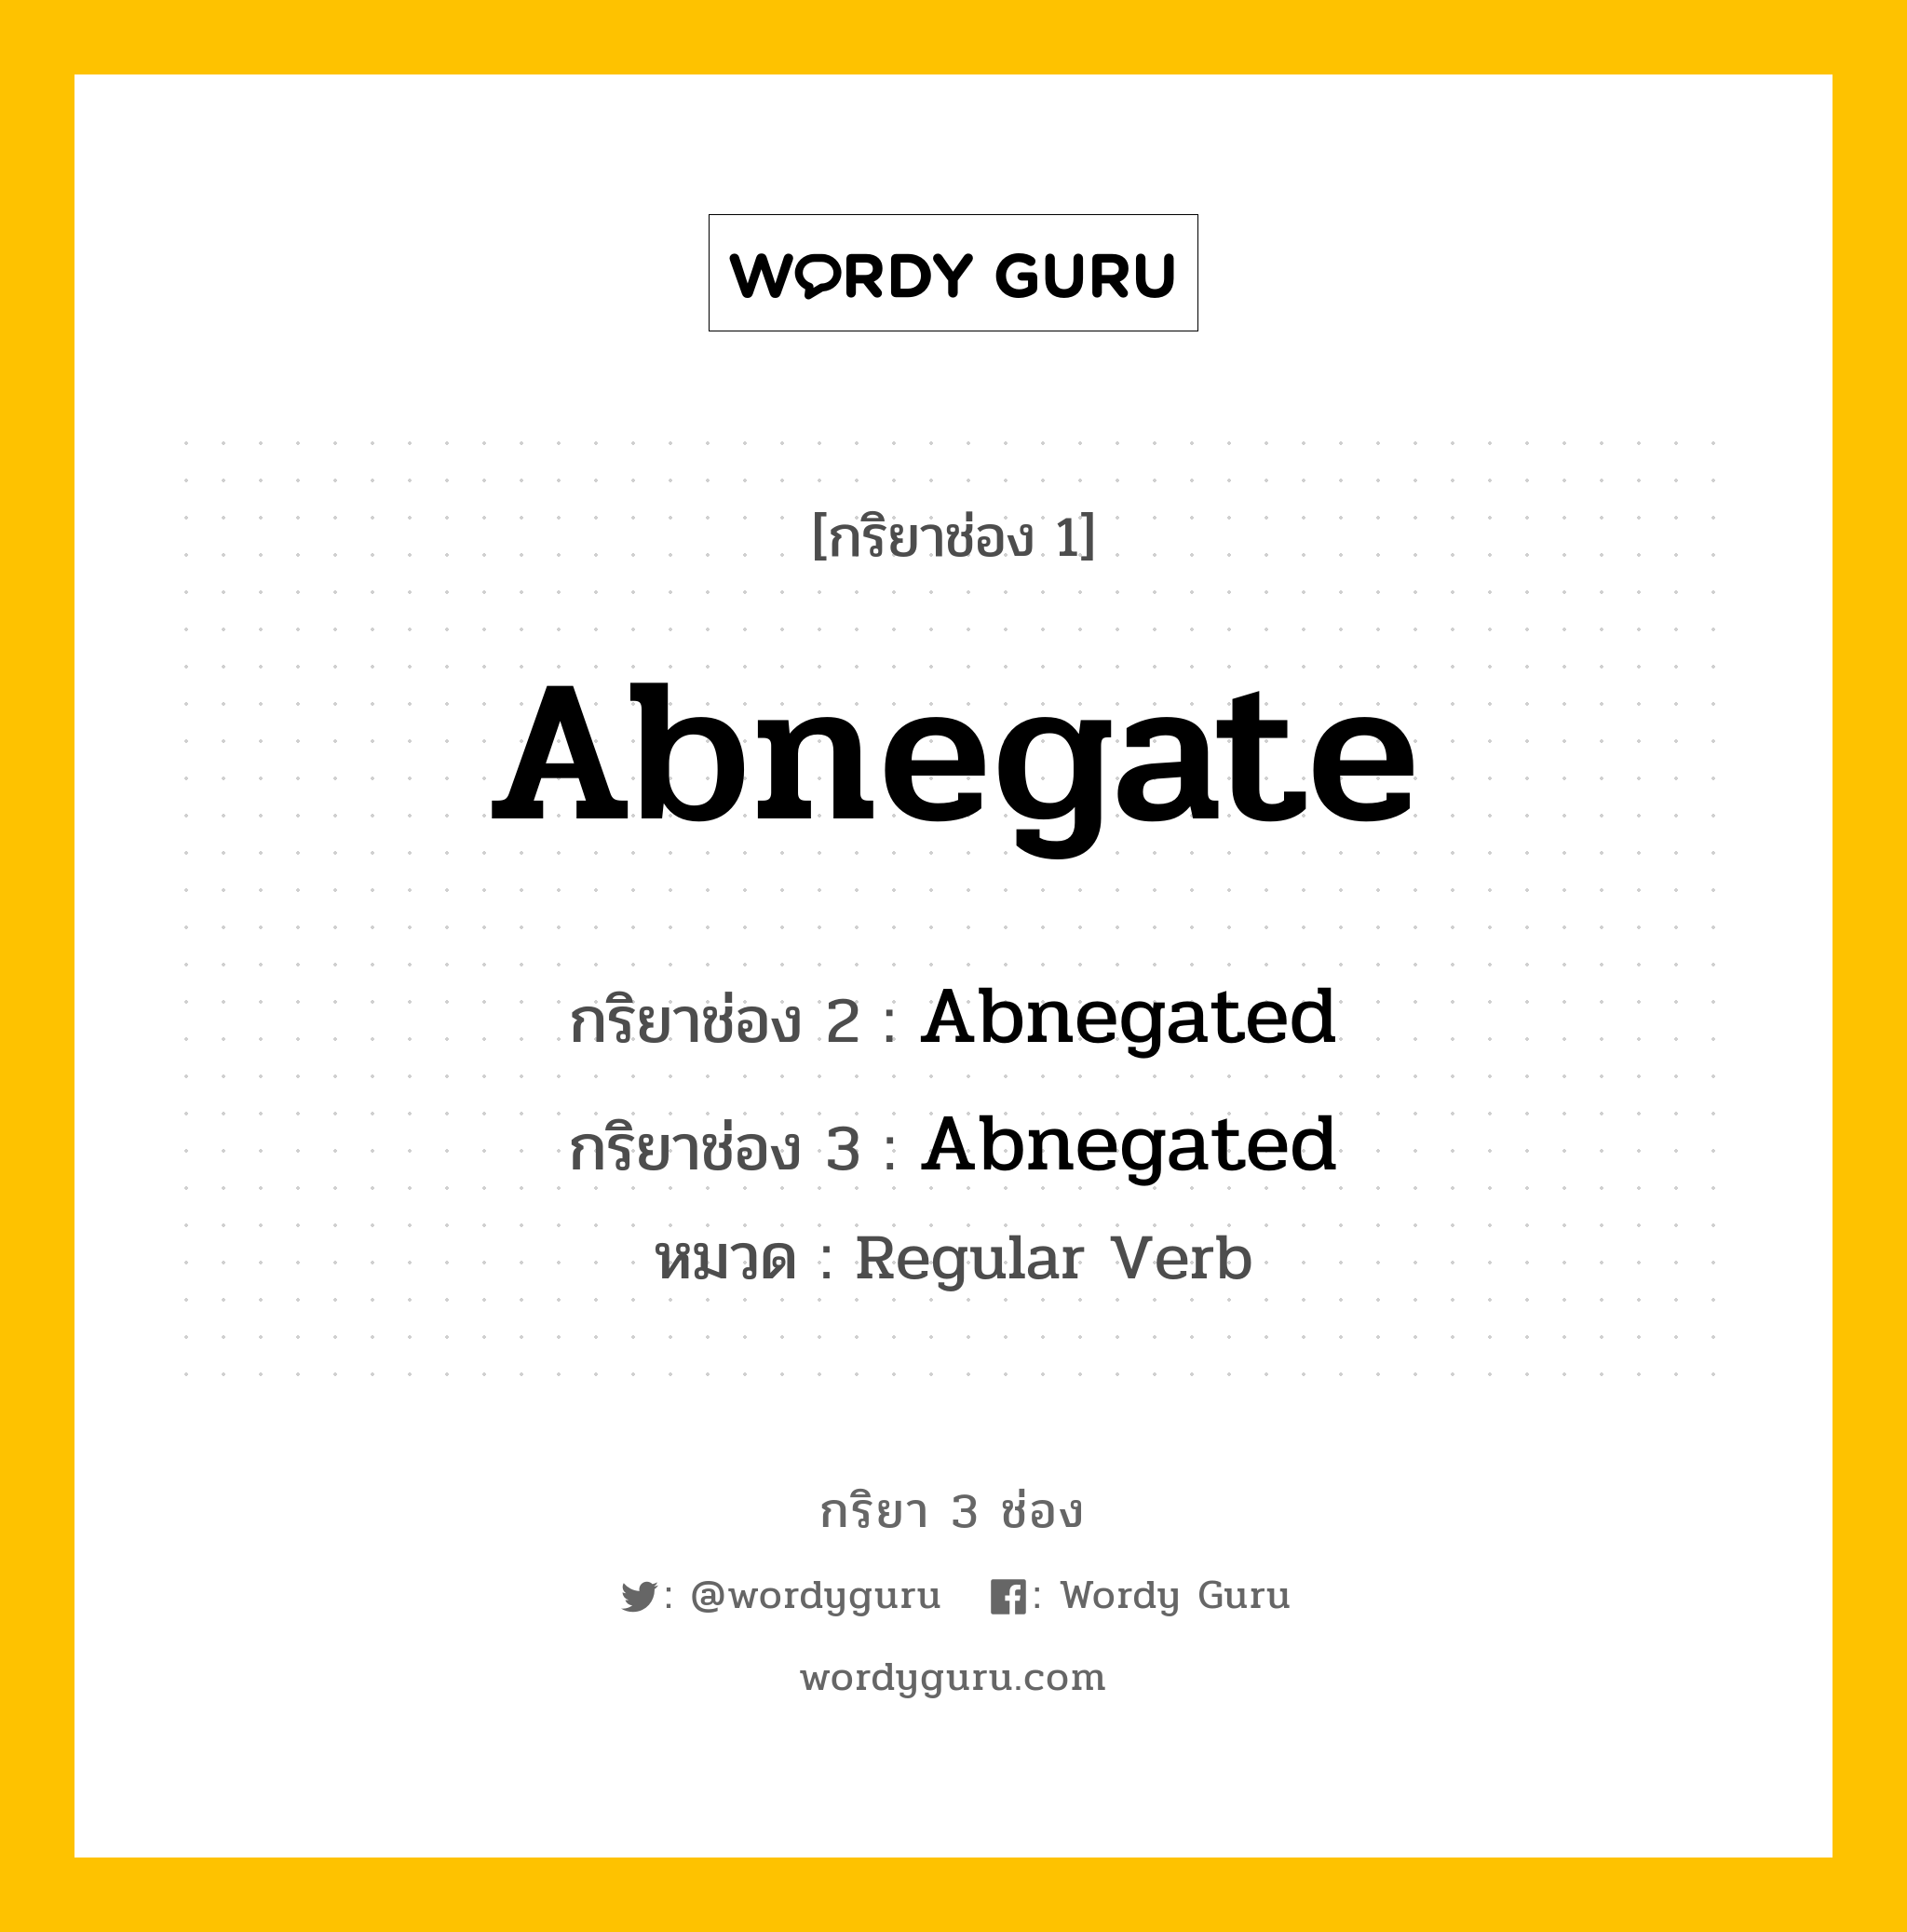 Abnegate มีกริยา 3 ช่องอะไรบ้าง? คำศัพท์ในกลุ่มประเภท Regular Verb, กริยาช่อง 1 Abnegate กริยาช่อง 2 Abnegated กริยาช่อง 3 Abnegated หมวด Regular Verb หมวด Regular Verb